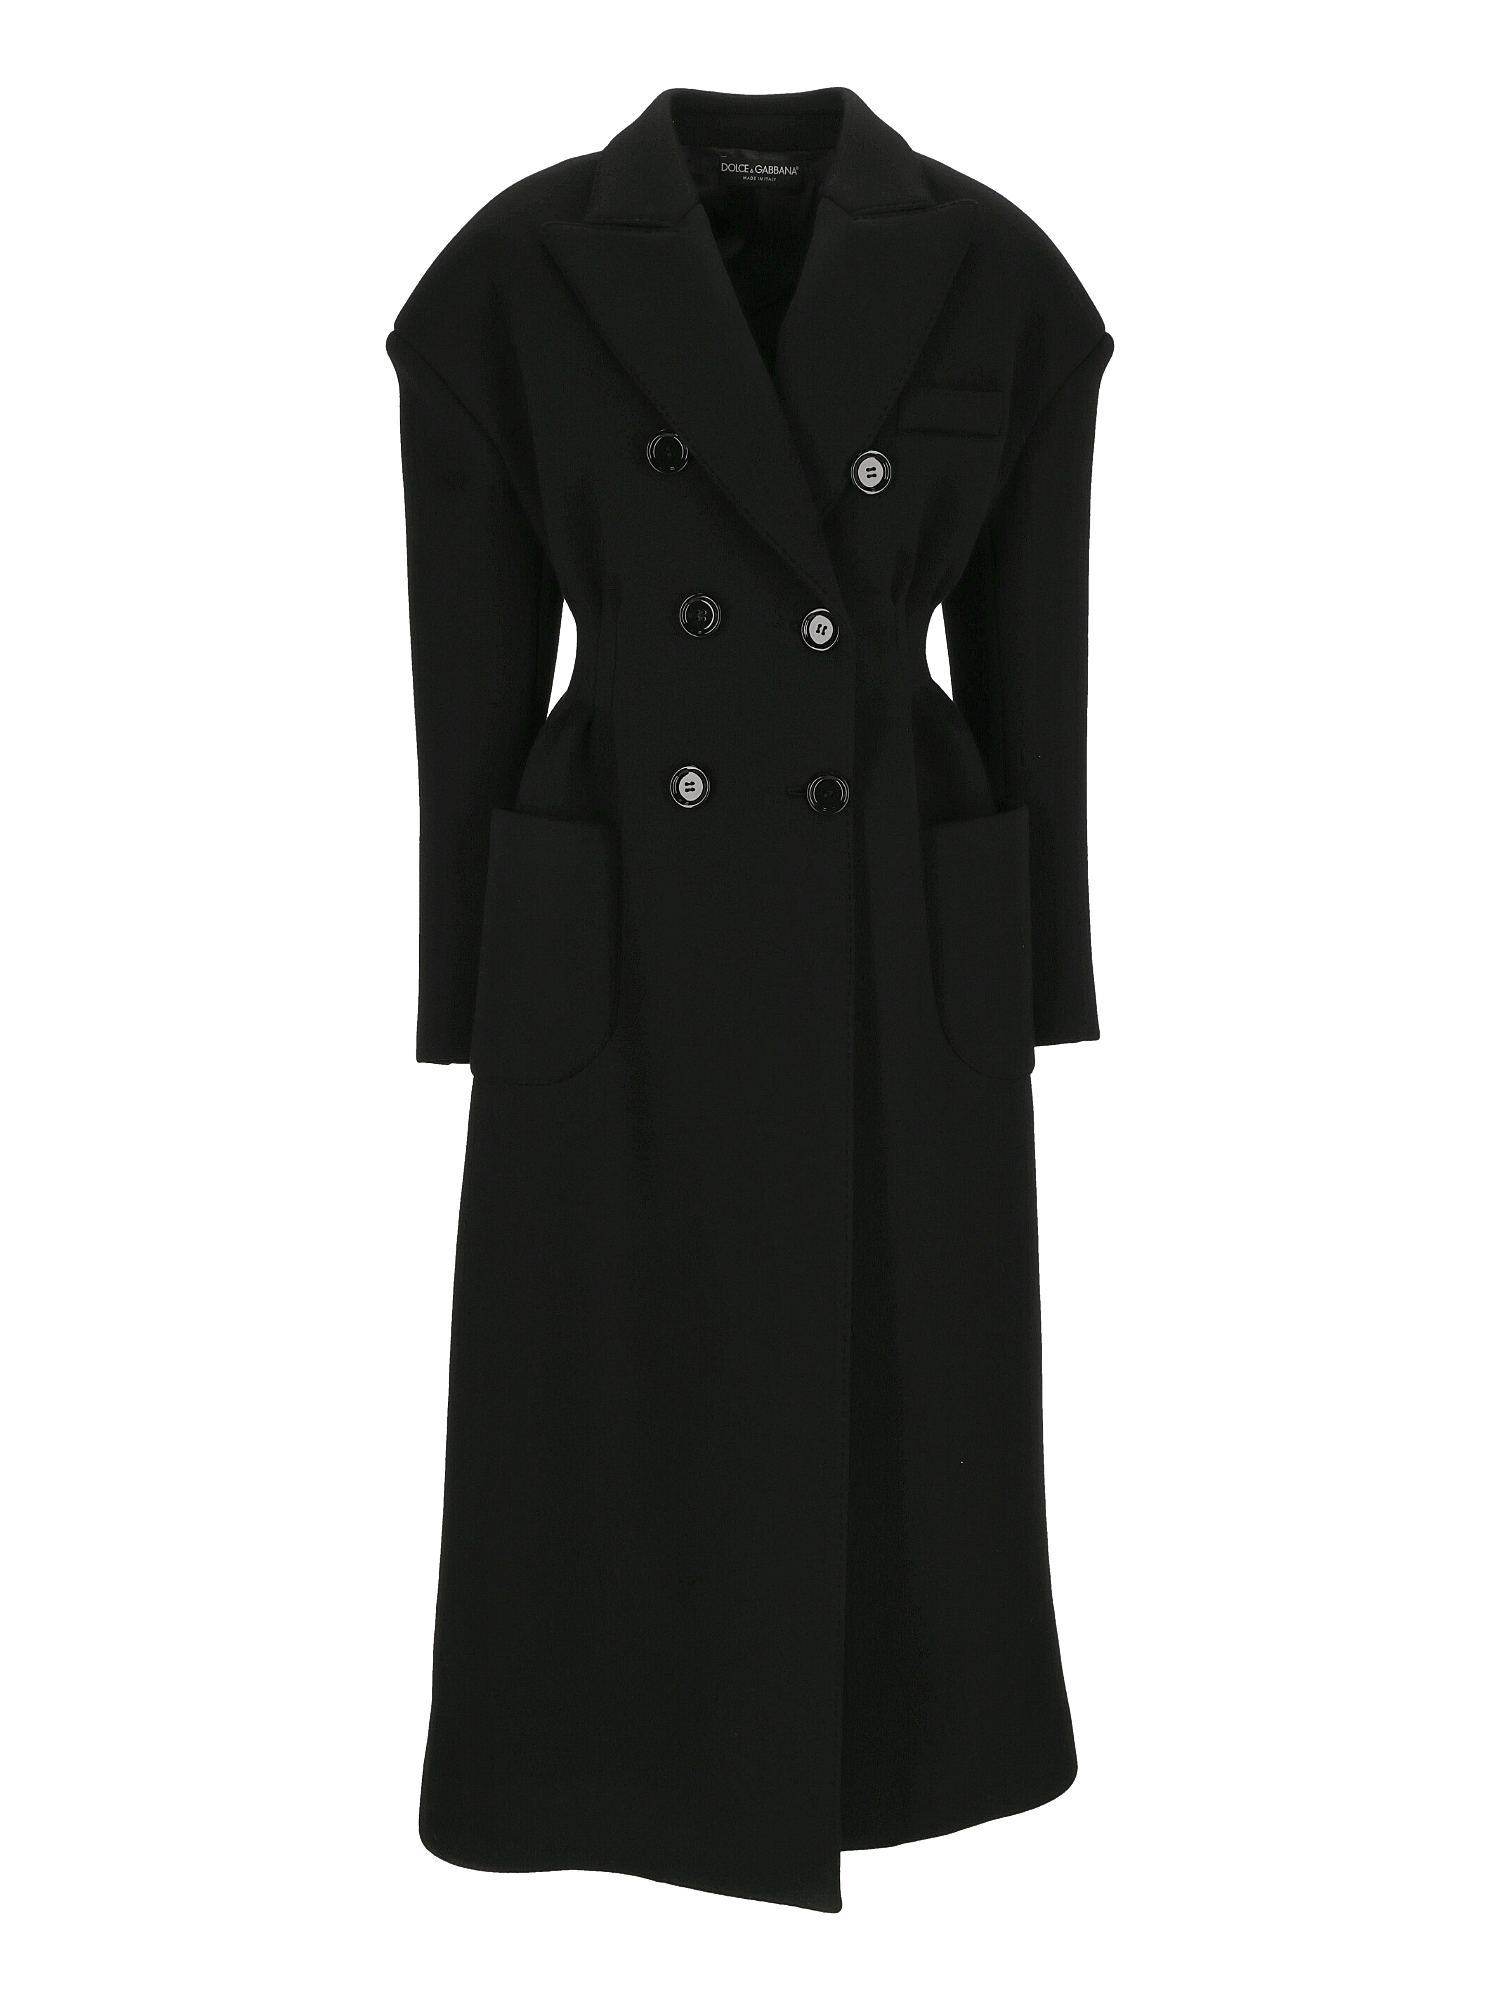 Manteaux Et Blousons Pour Femme - Dolce & Gabbana - En Cotton Black - Taille:  -